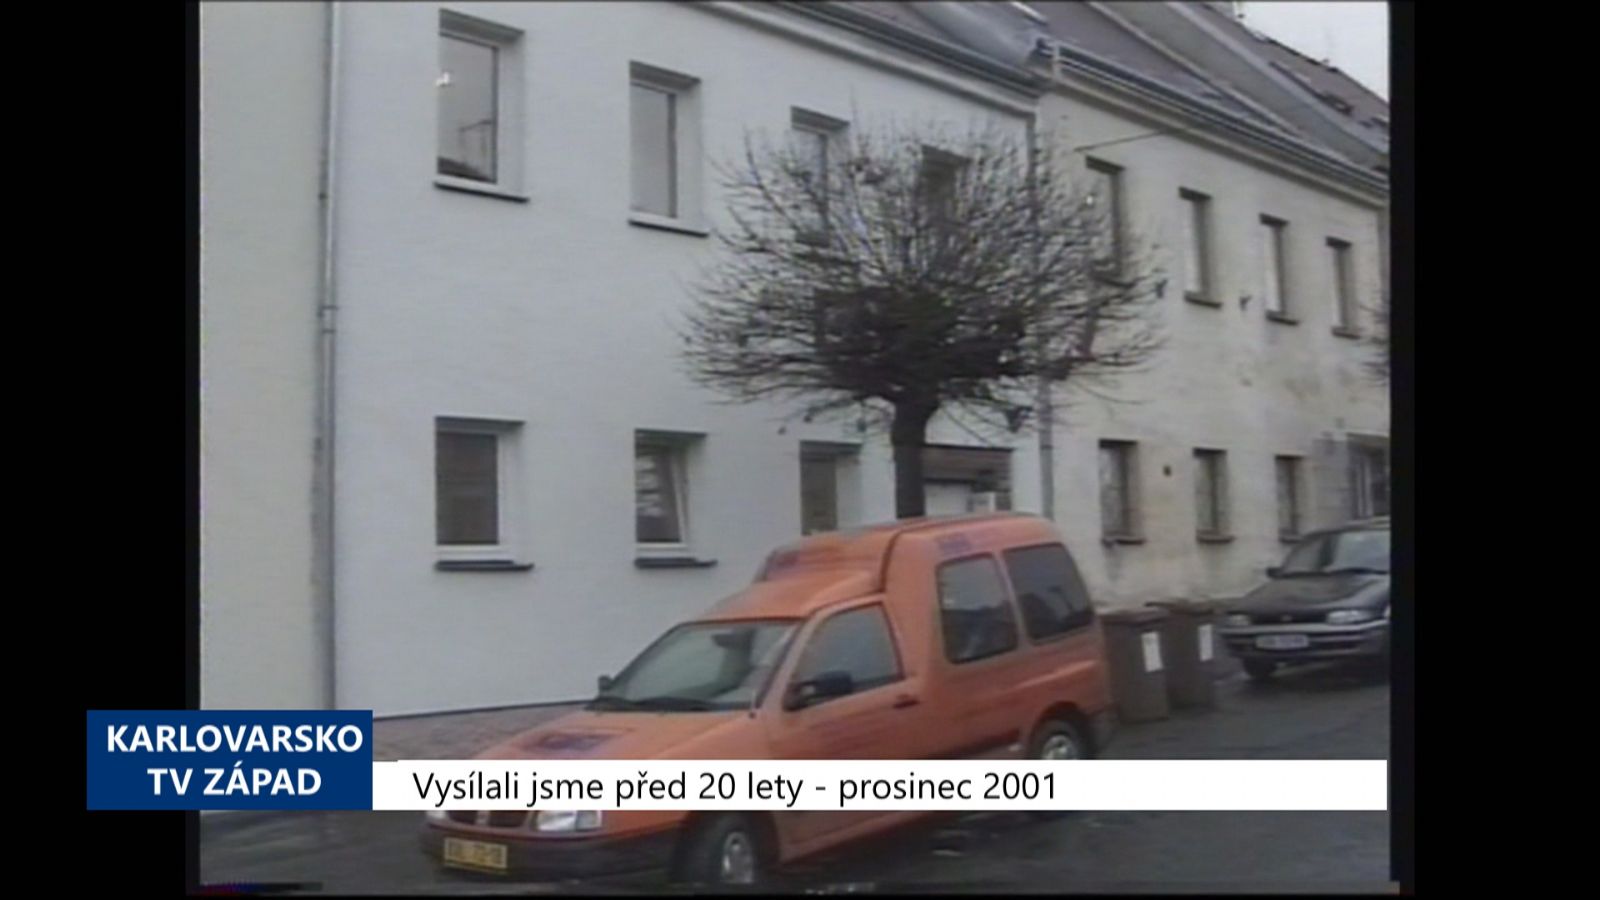 2001 – Kynšperk: Lupiče z banky zadrželi policisté jen pár dní po činu (TV Západ)